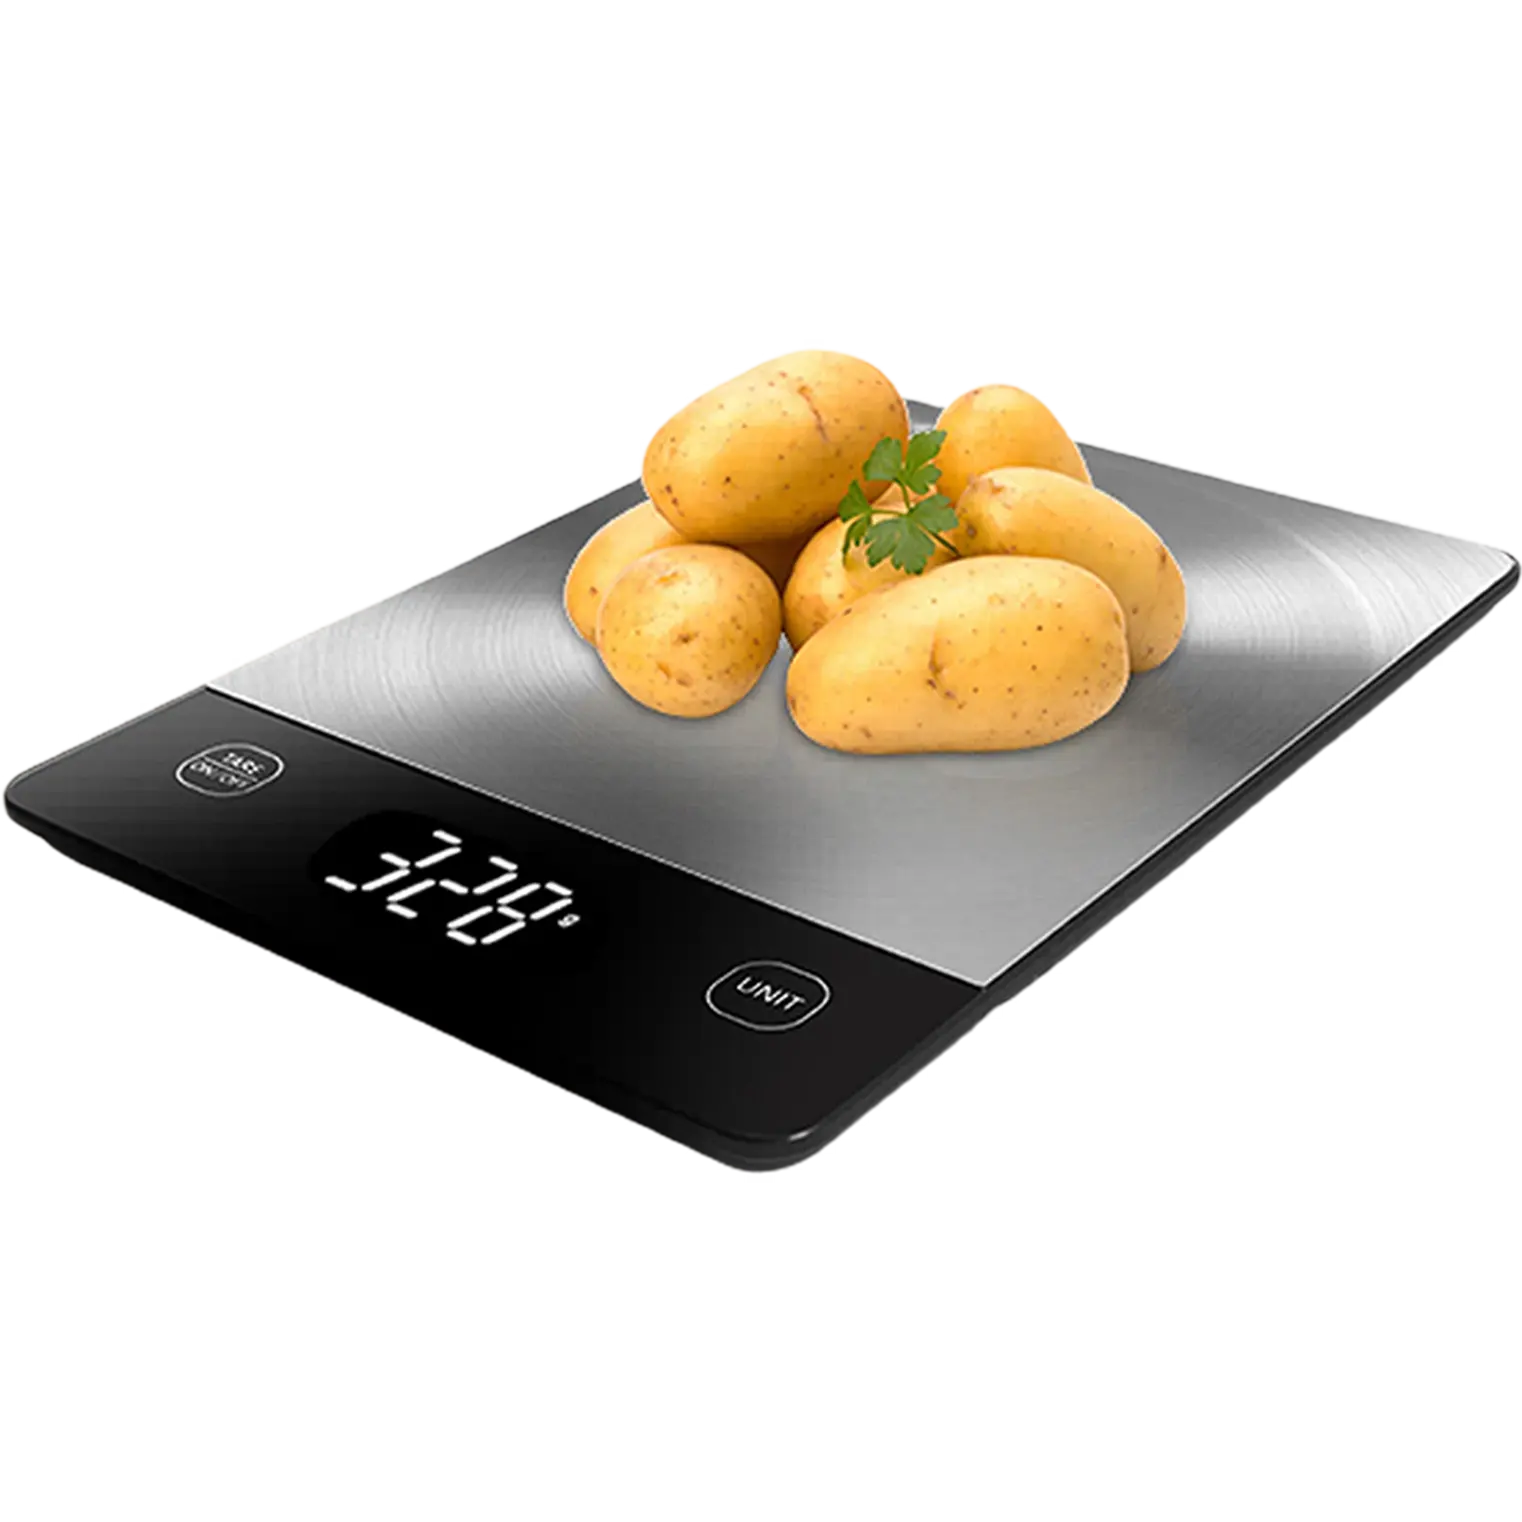 Balança eletrônica digital de aço inoxidável com display LED de alta qualidade para cozinha, balança de peso para alimentos